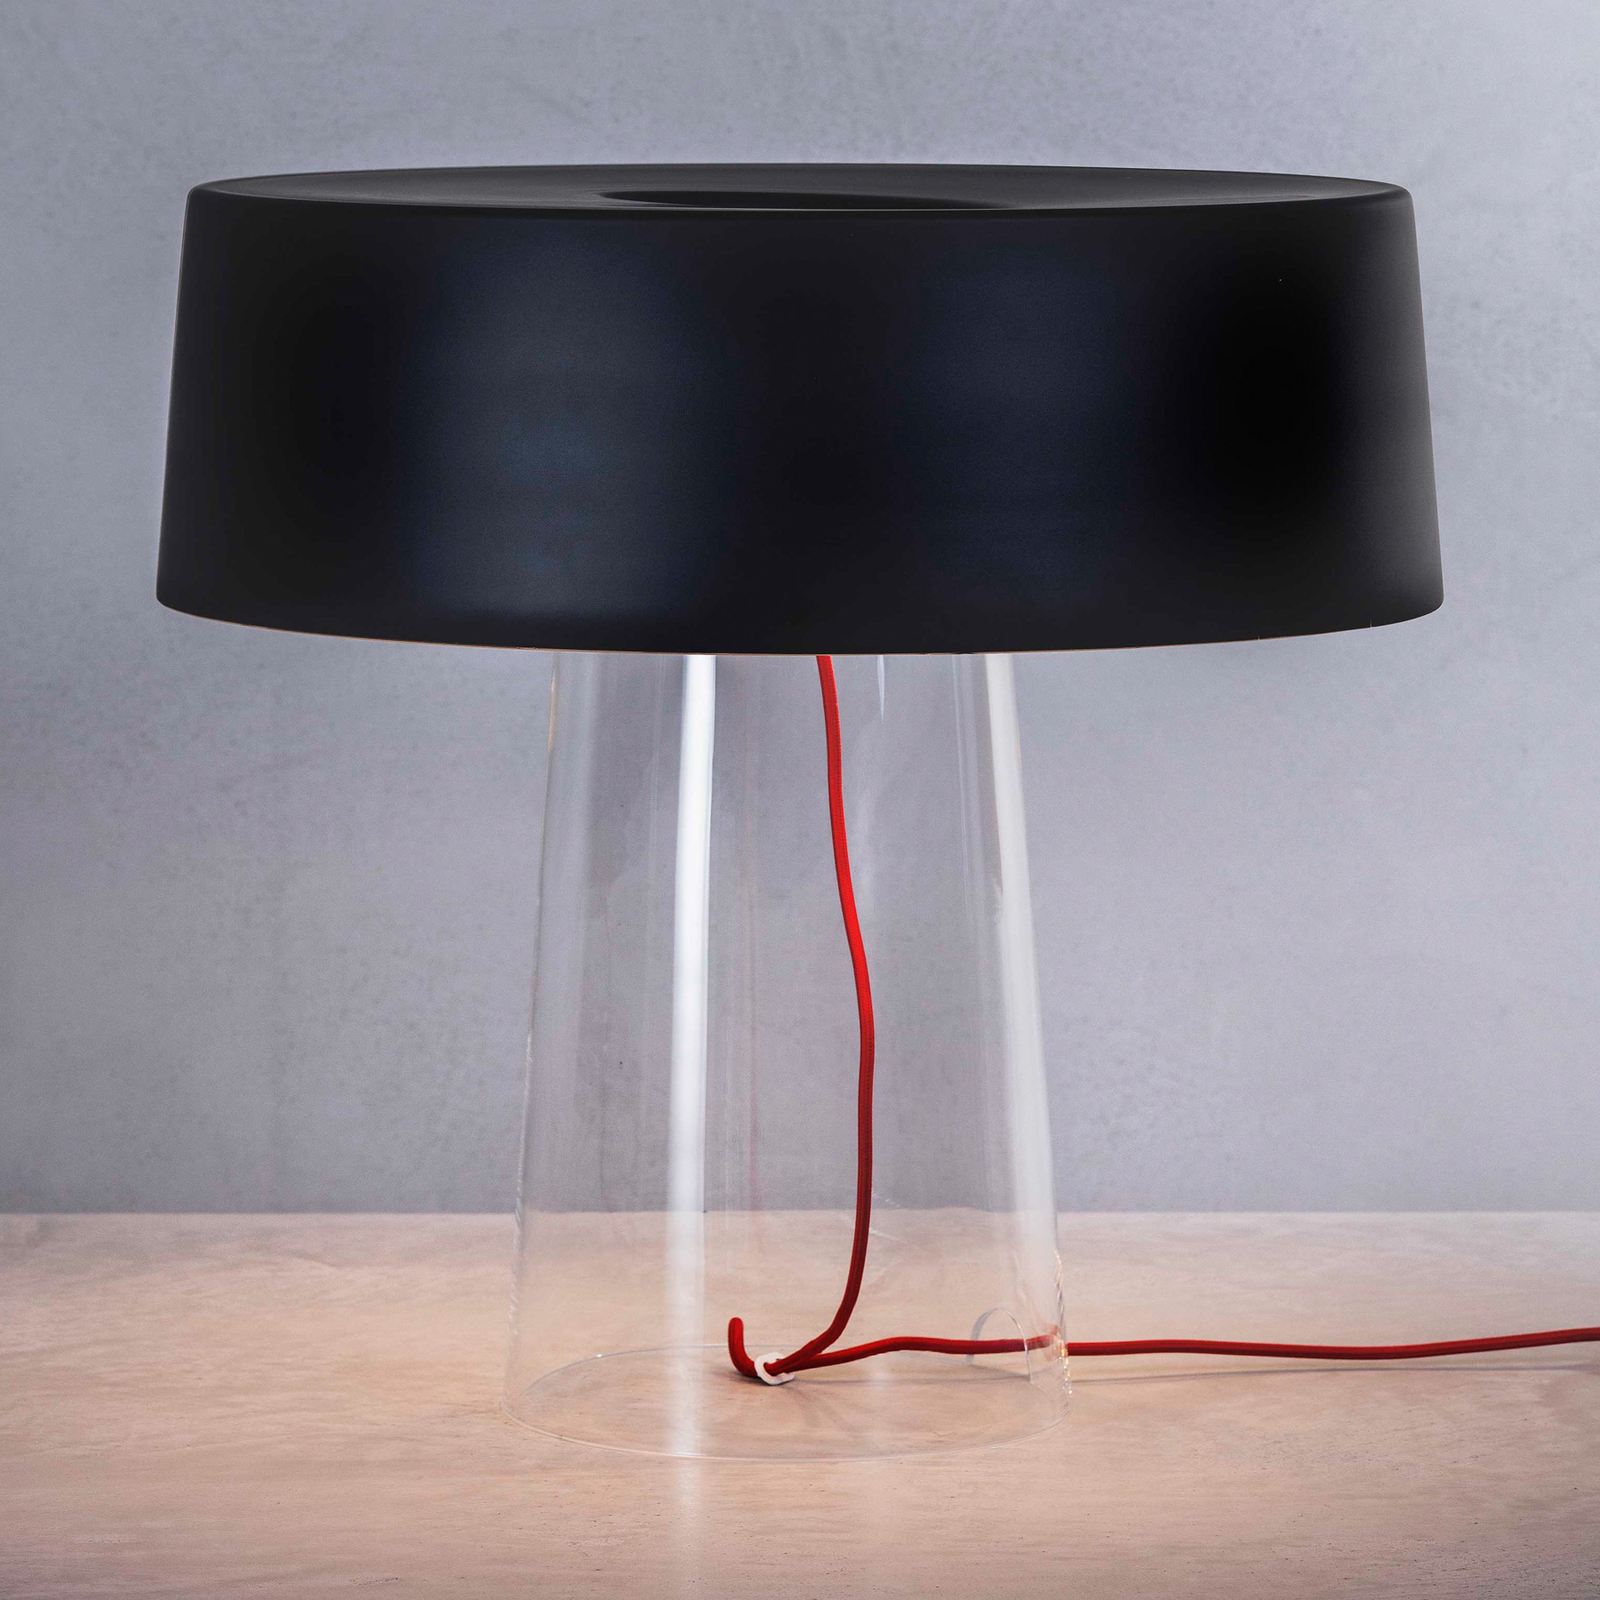 Prandina Glam stolní lampa 48cm čirá/černá